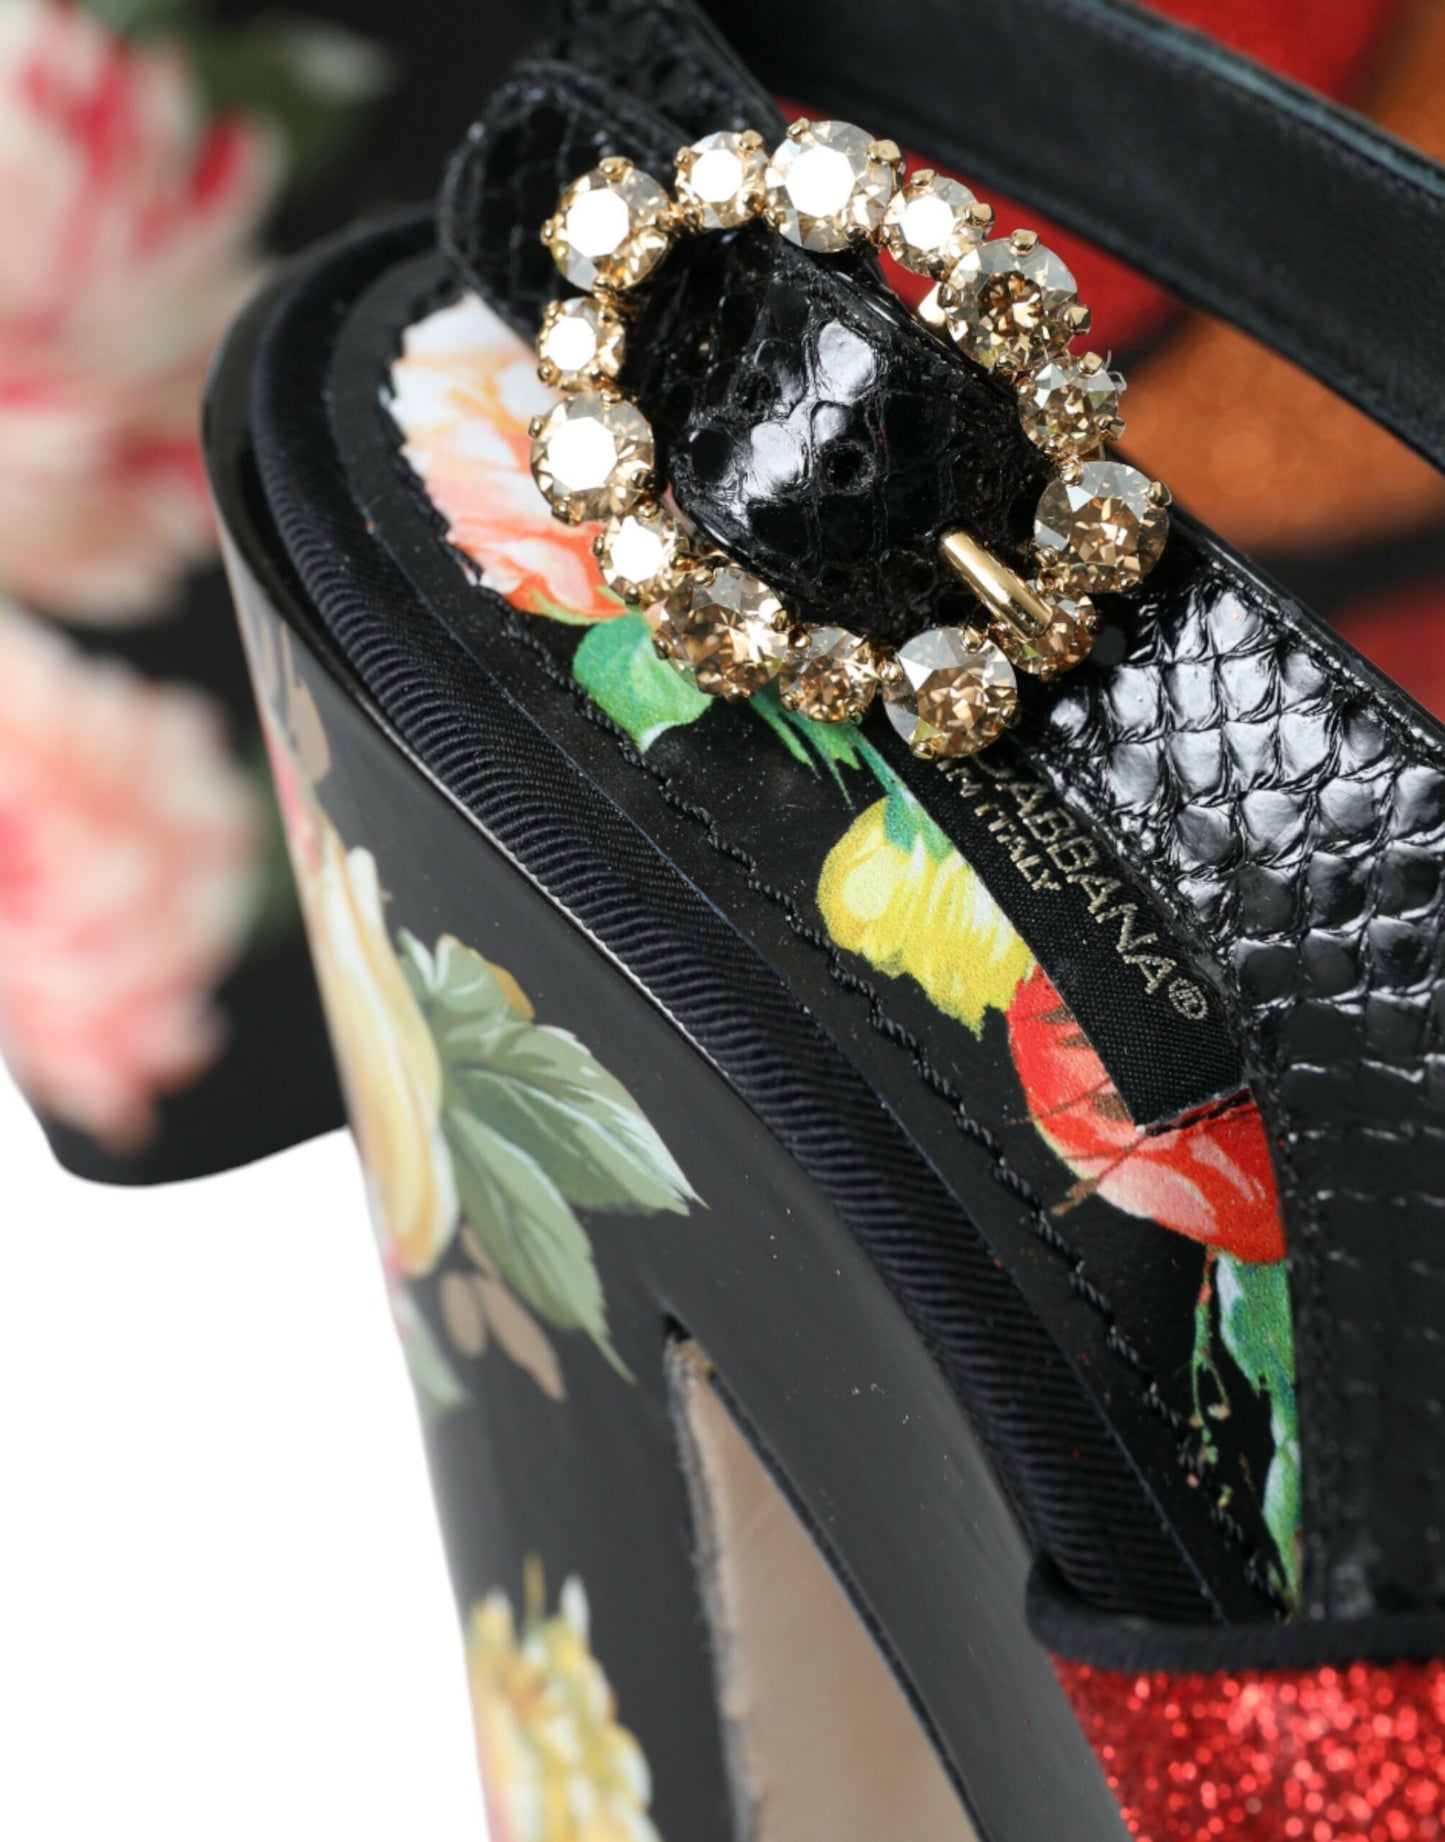 Multicolor Floral Crystal Platform Sandals Shoes